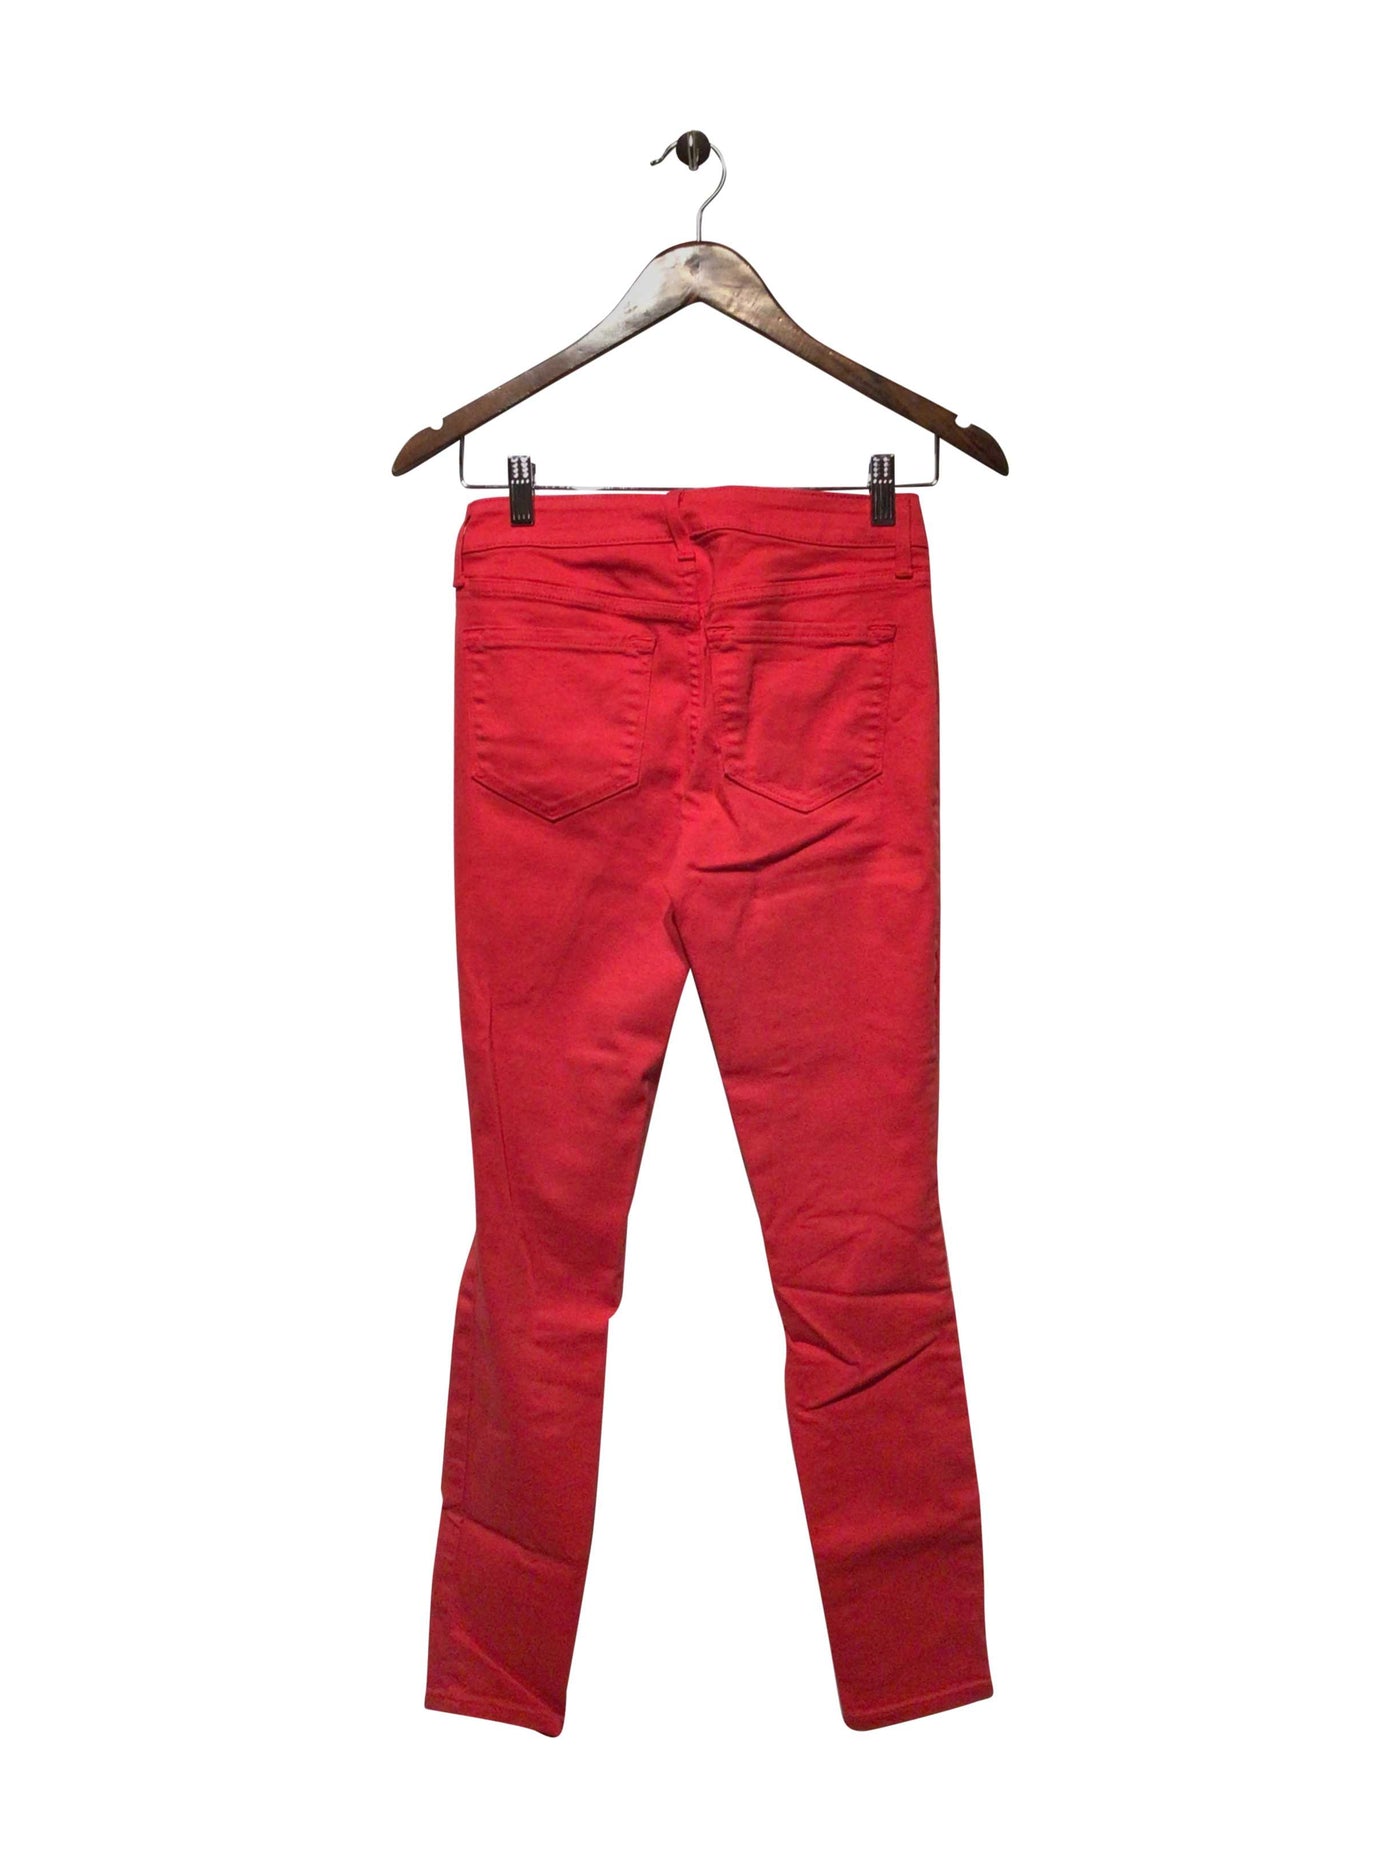 OLD NAVY Regular fit Pant in Red  -  2  13.99 Koop